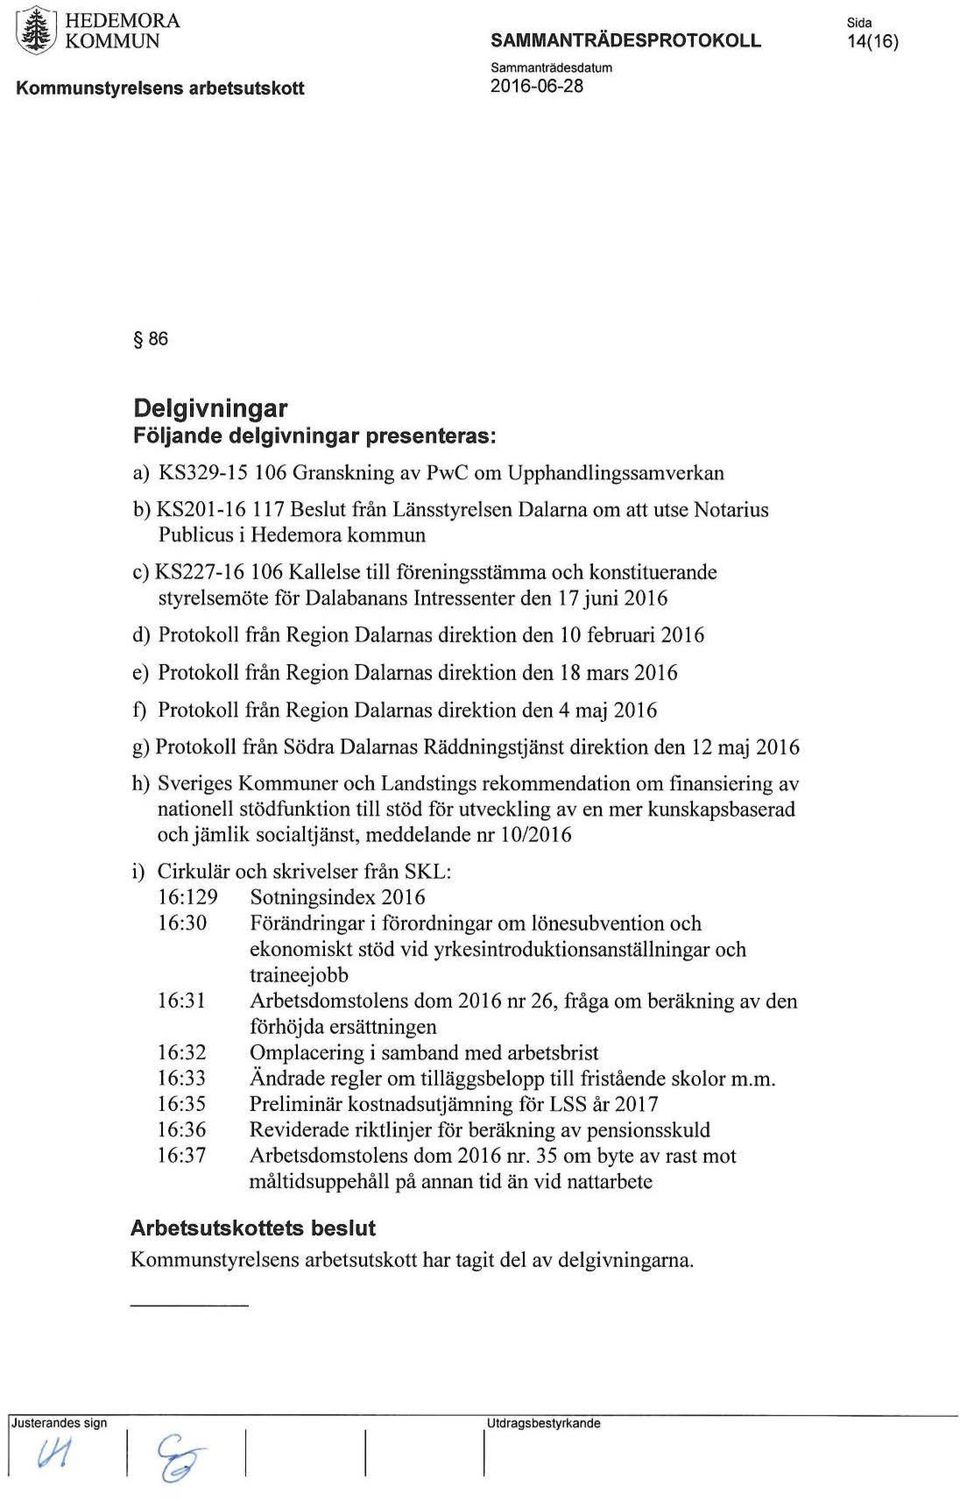 Dalarnas direktion den 10 februari 2016 e) Protokoll från Region Dalarnas direktion den 18 mars 2016 t) Protokoll från Region Dalarnas direktion den 4 maj 2016 g) Protokoll från Södra Dalarnas